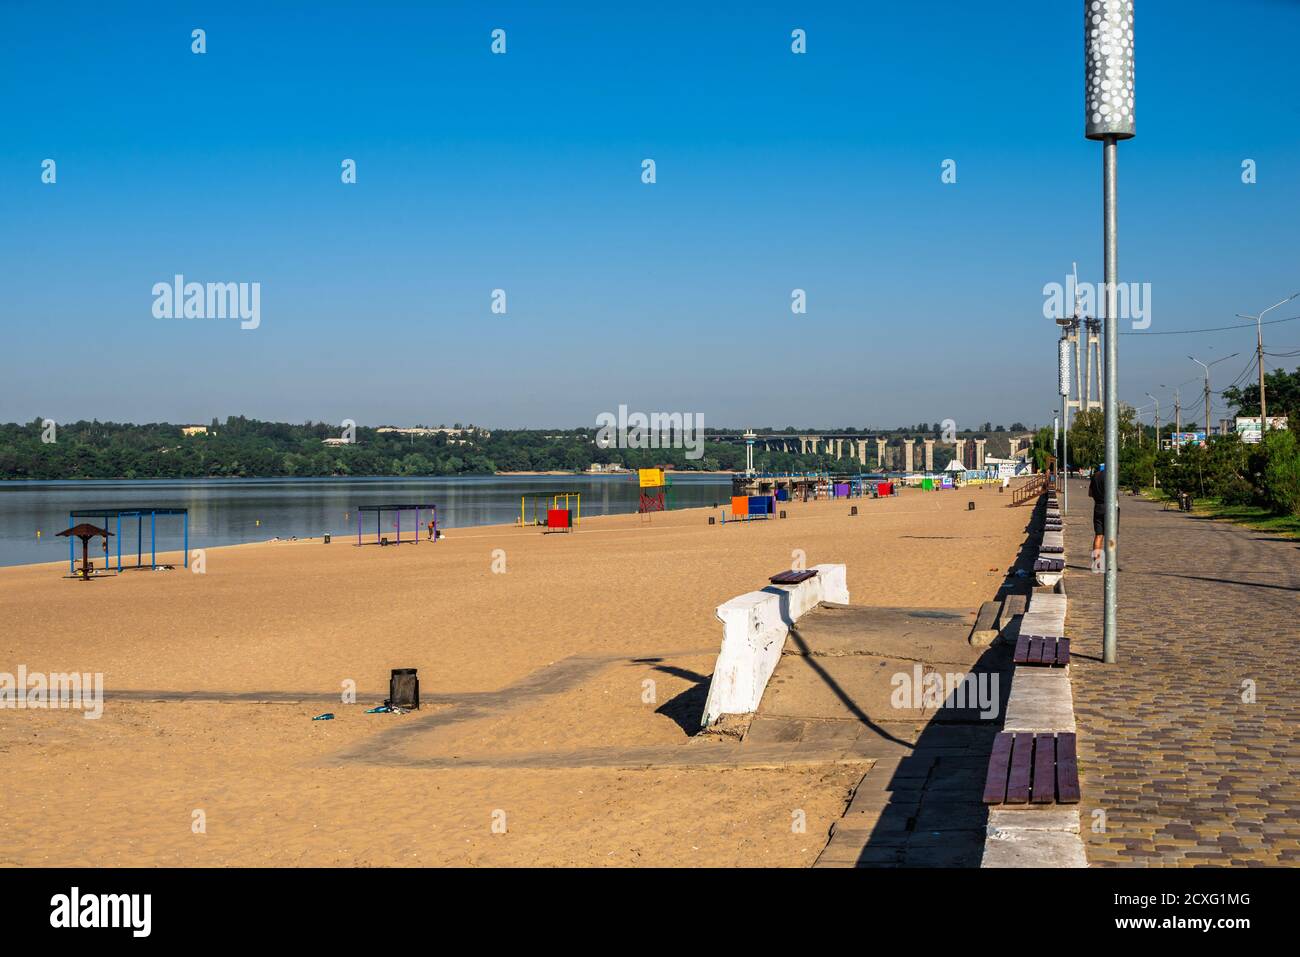 Zaporozhye, Ukraine 07.21.2020. Public beach on the banks of the Dnieper in Zaporozhye, Ukraine, on a sunny summer morning Stock Photo